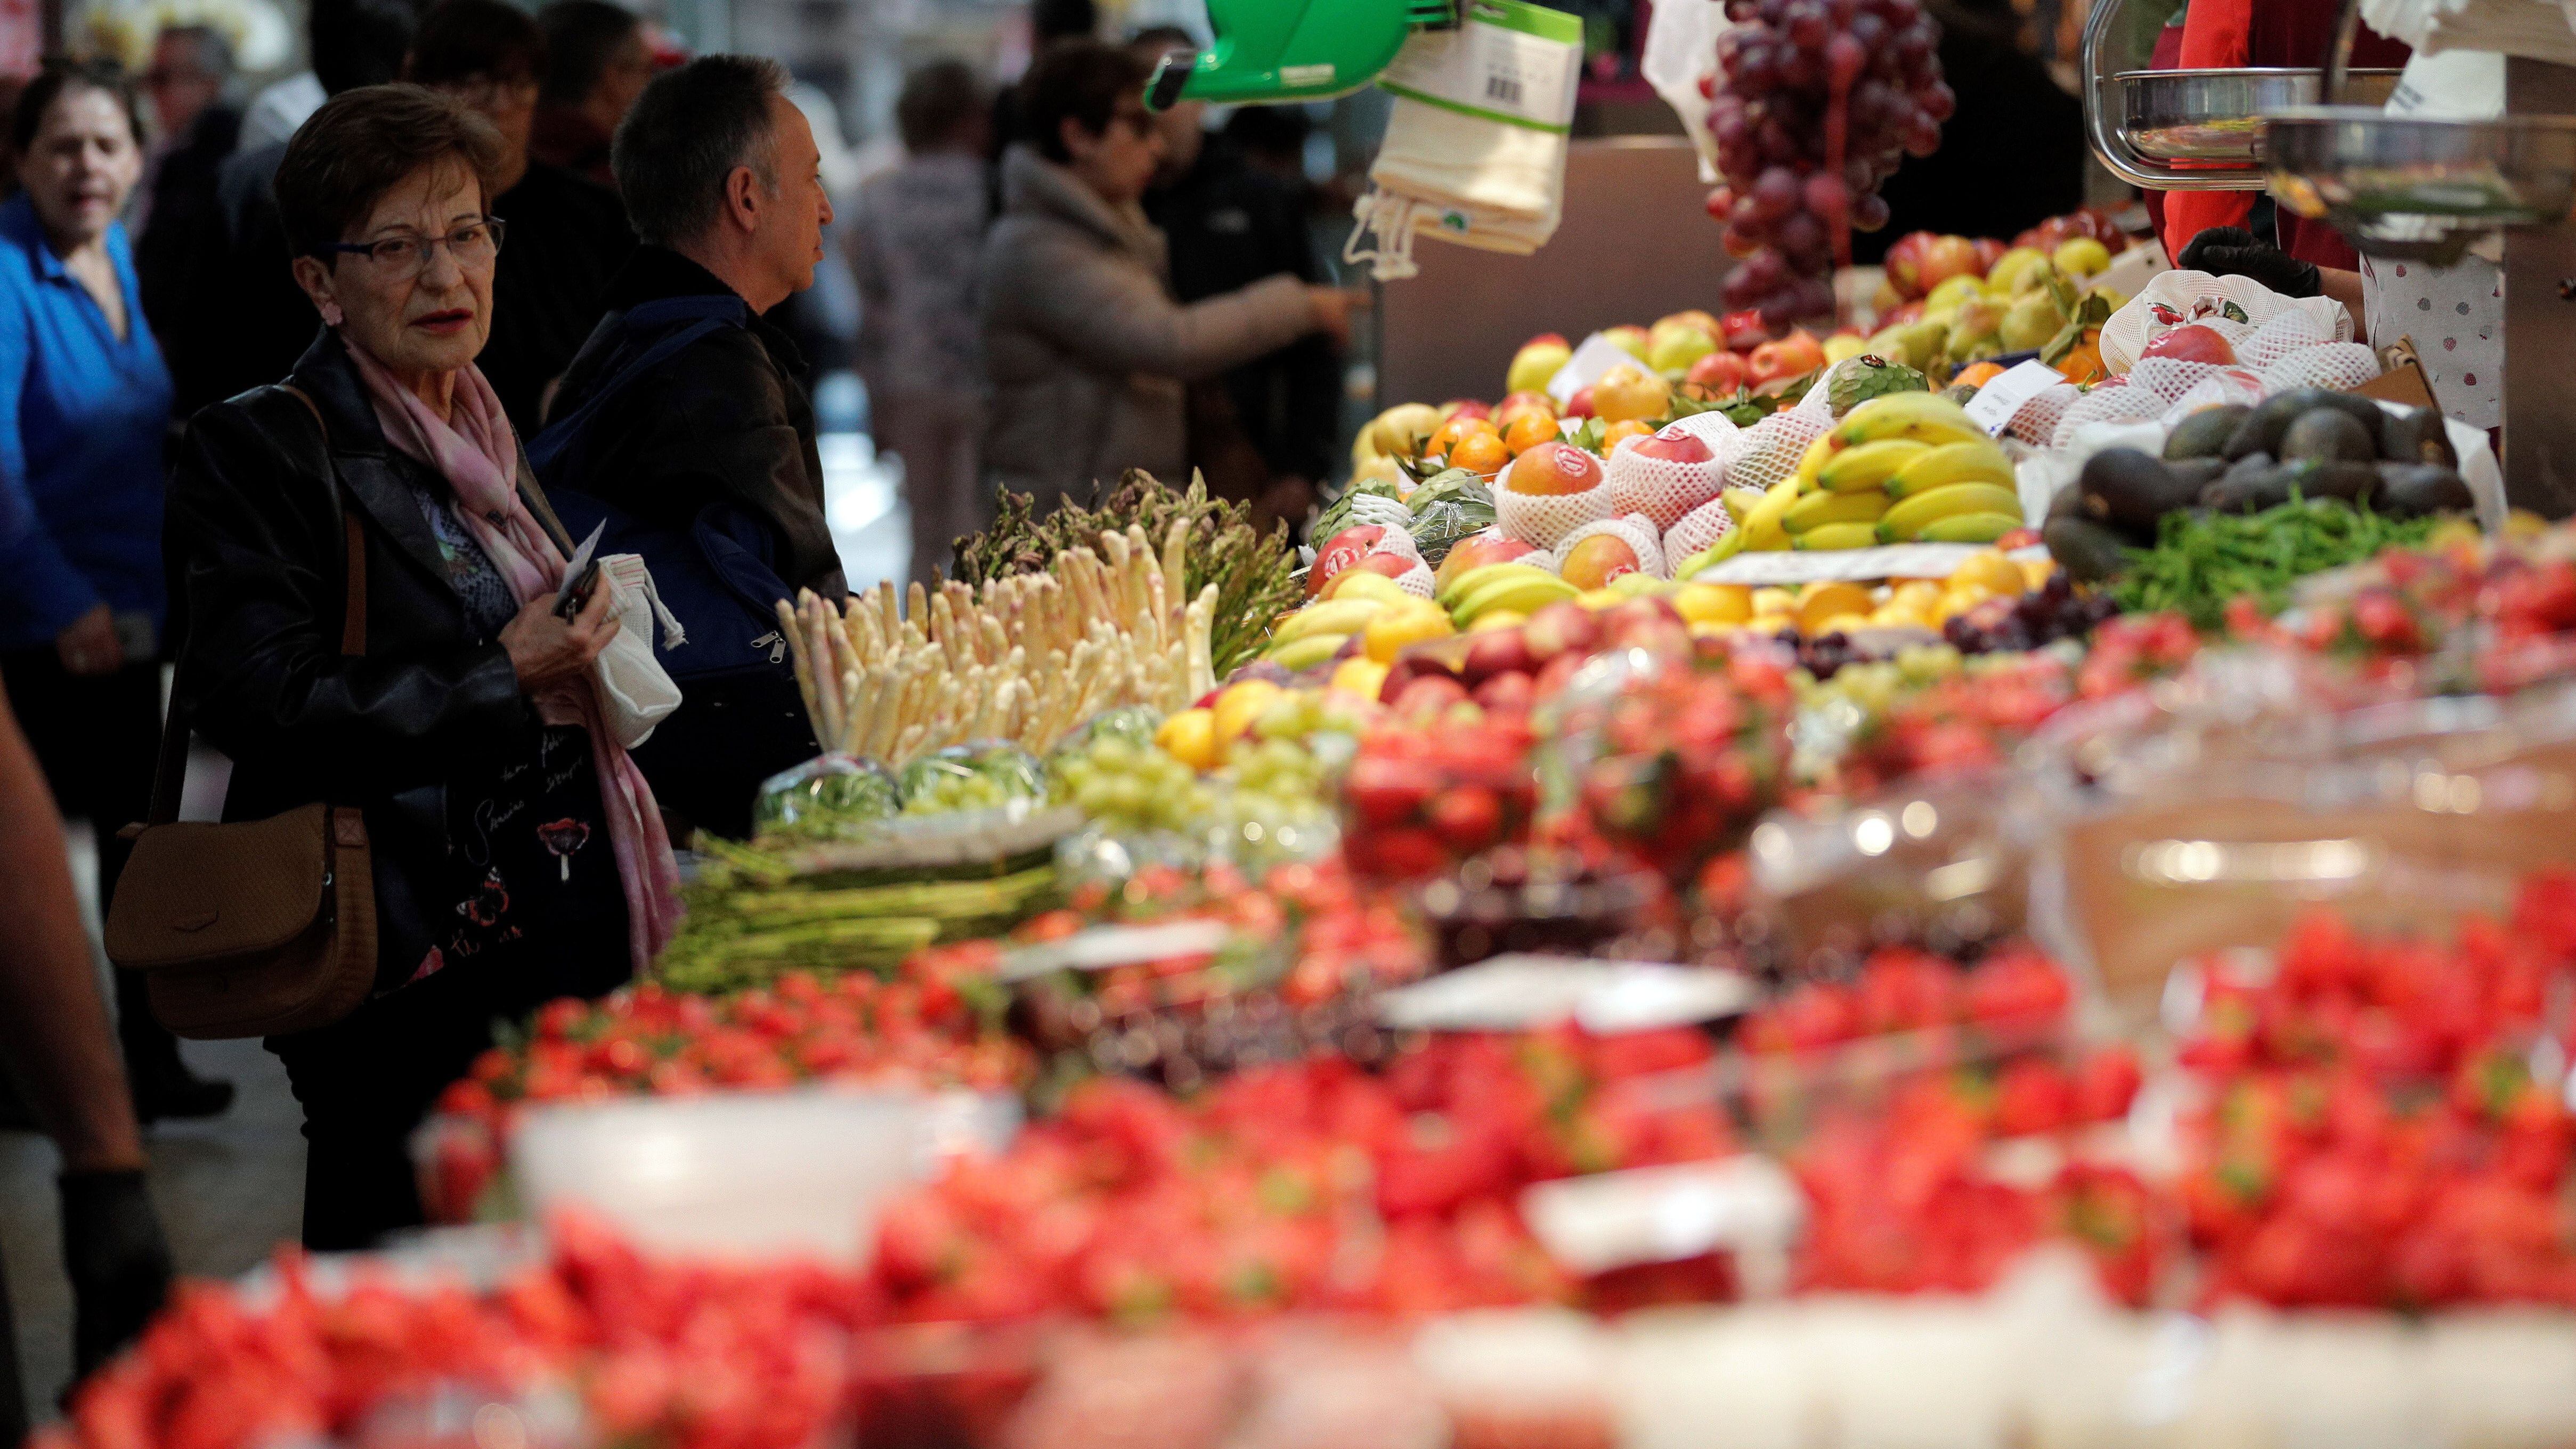 Vista general de un puesto de fruta y verdura en el mercado central de Valencia . EFE/Kai Försterling